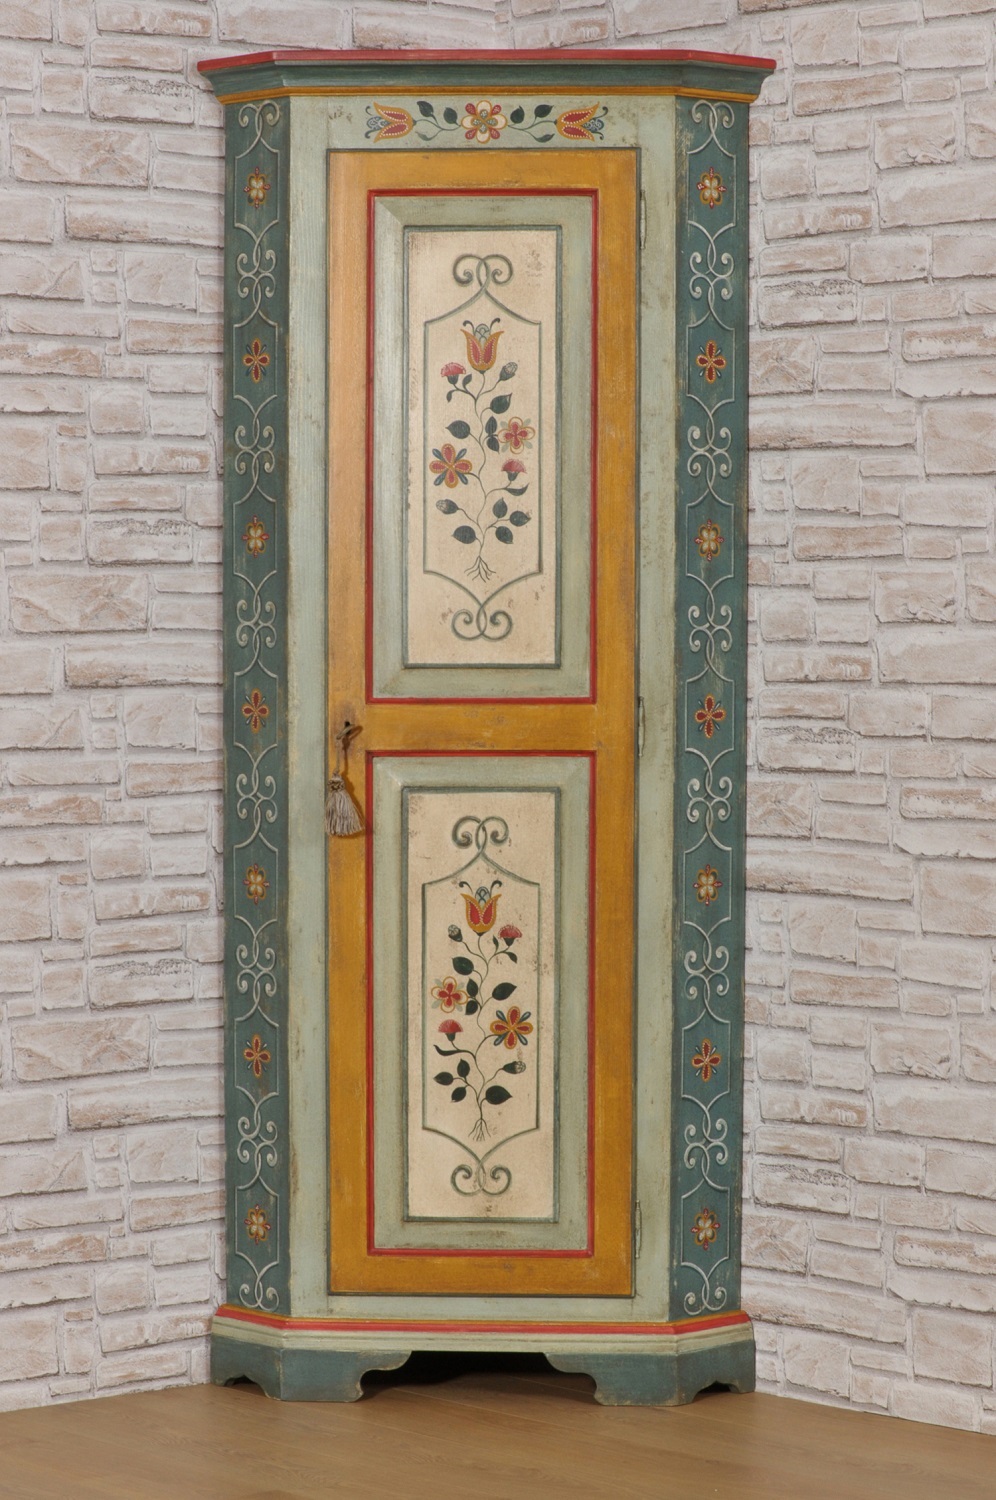 angolare decorato per case di lusso di montagna del trentino tirolese ad una anta dipinto con fiori stilizzati dai colori vivaci tipici del trentino ad una anta